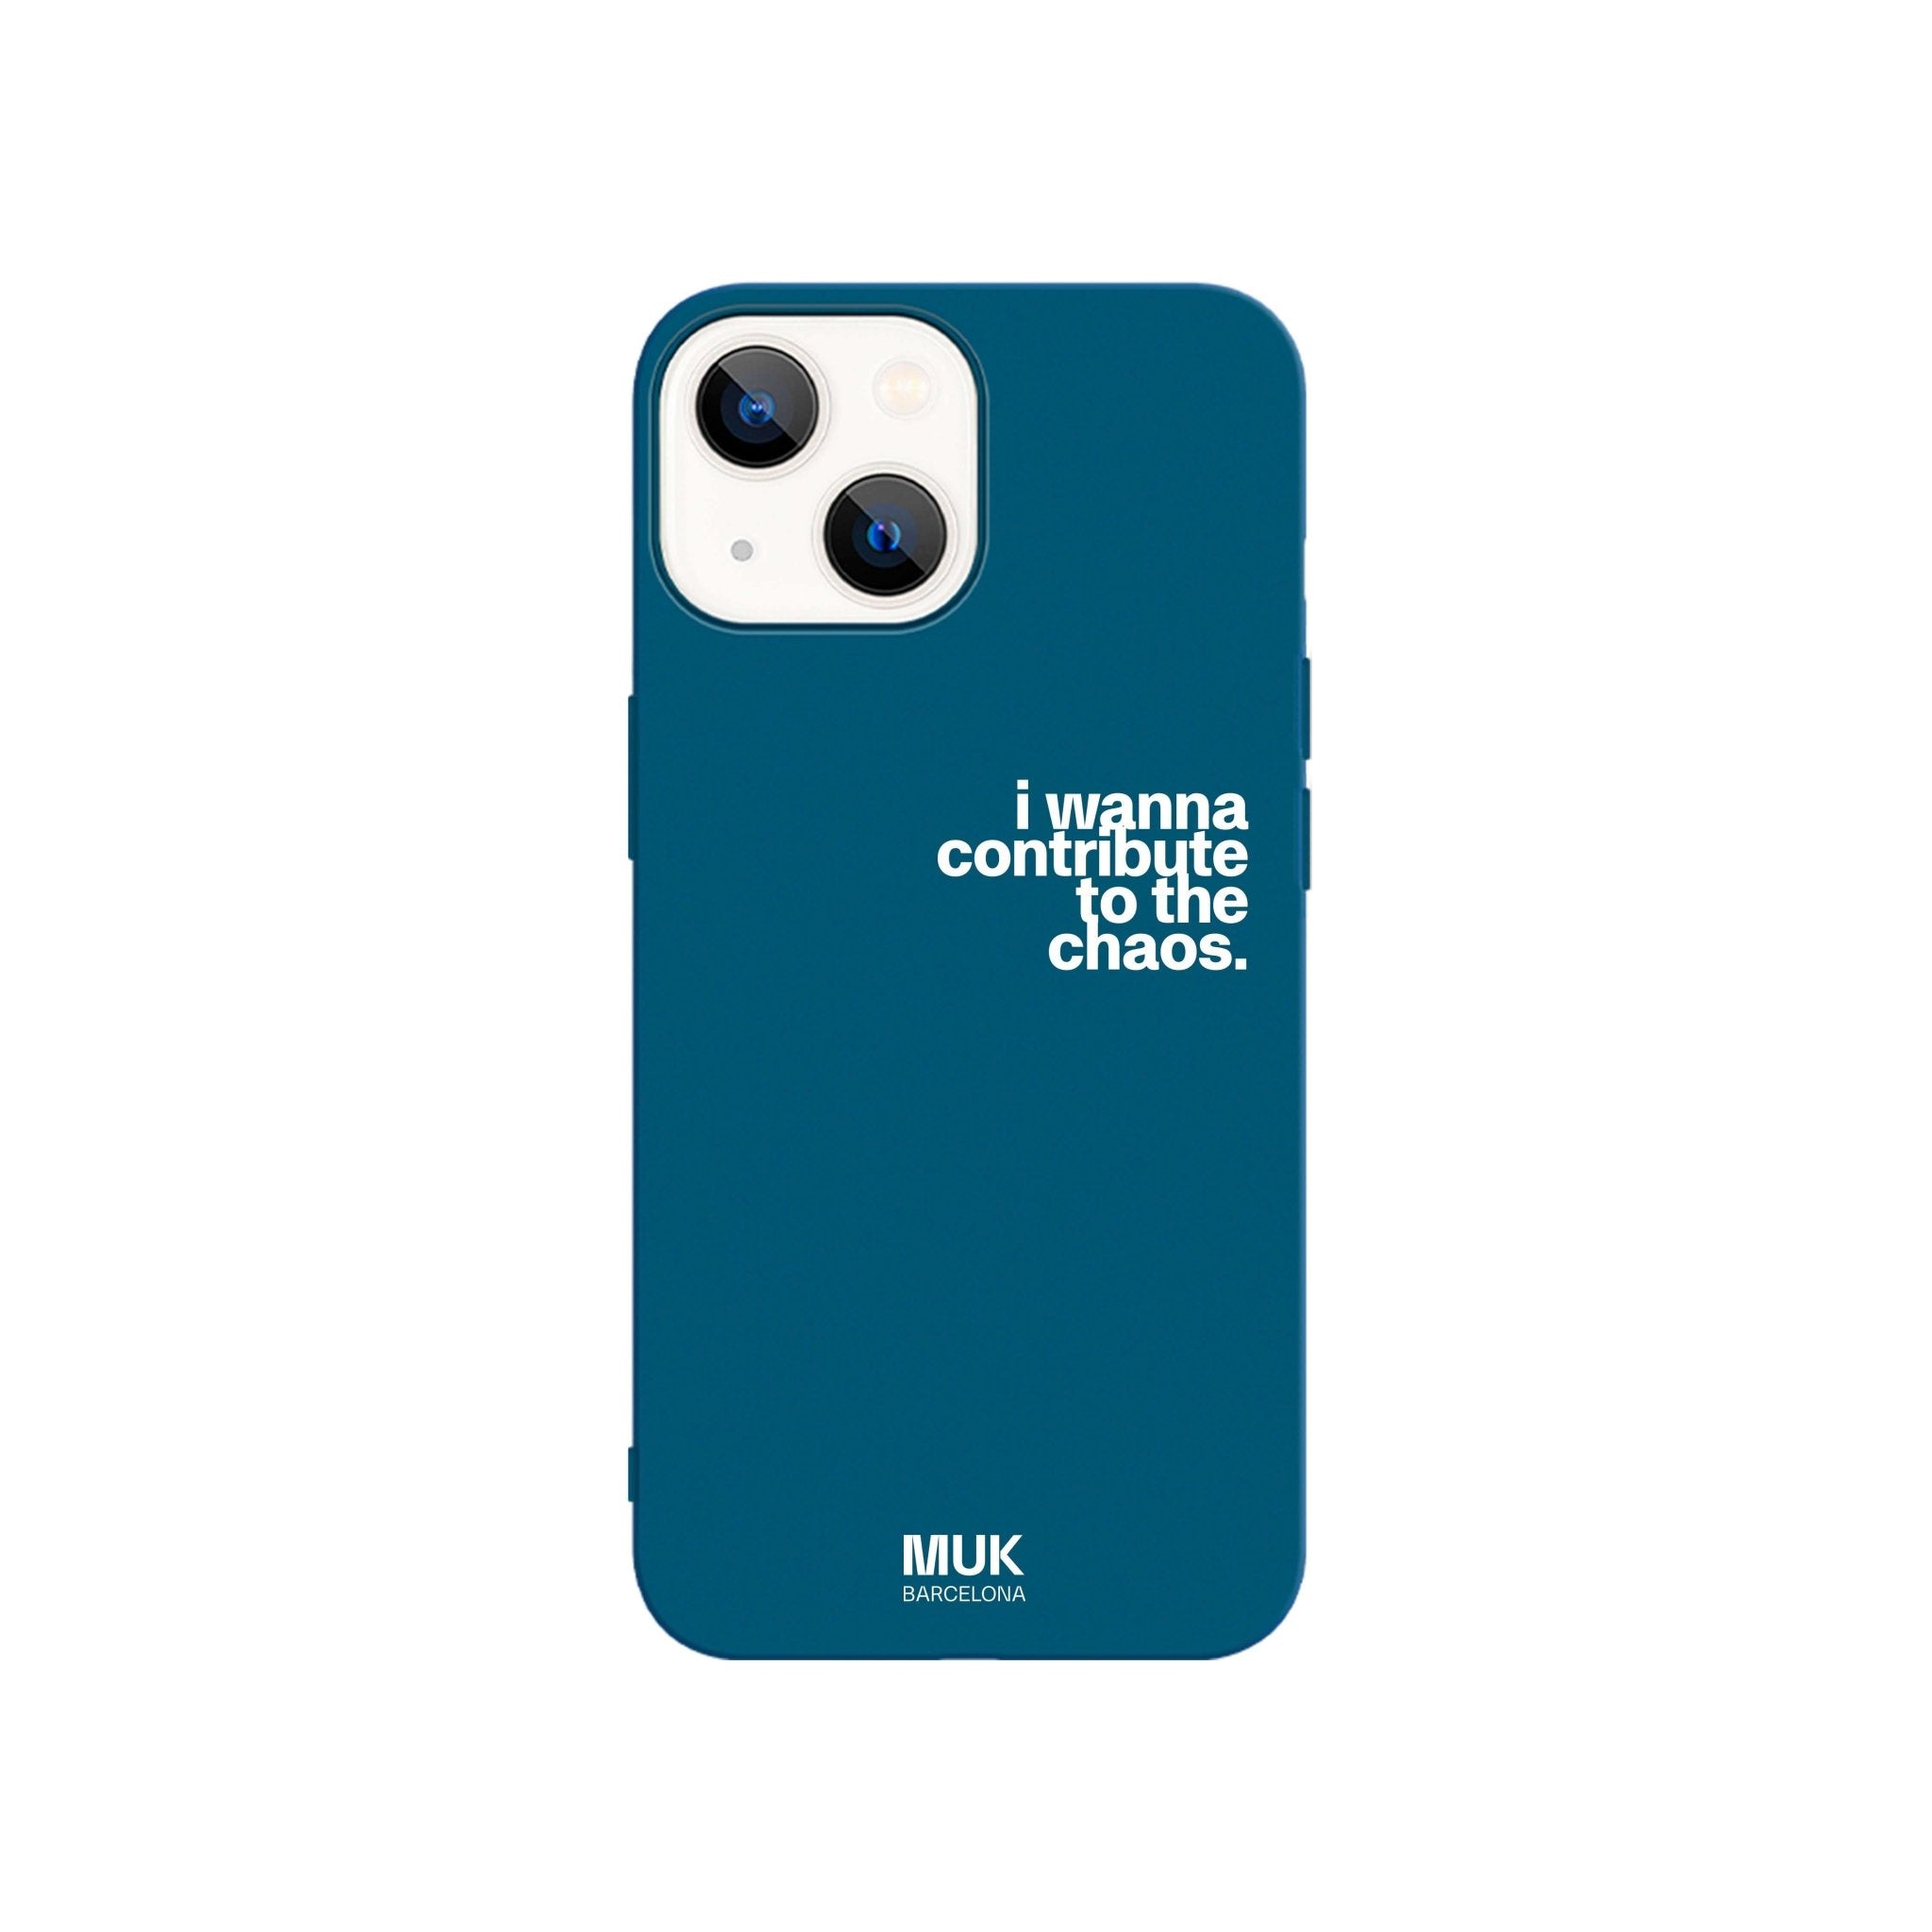 Phone Case TPU azul con frase "I wanna contribute to the chaos" en color blanco.
